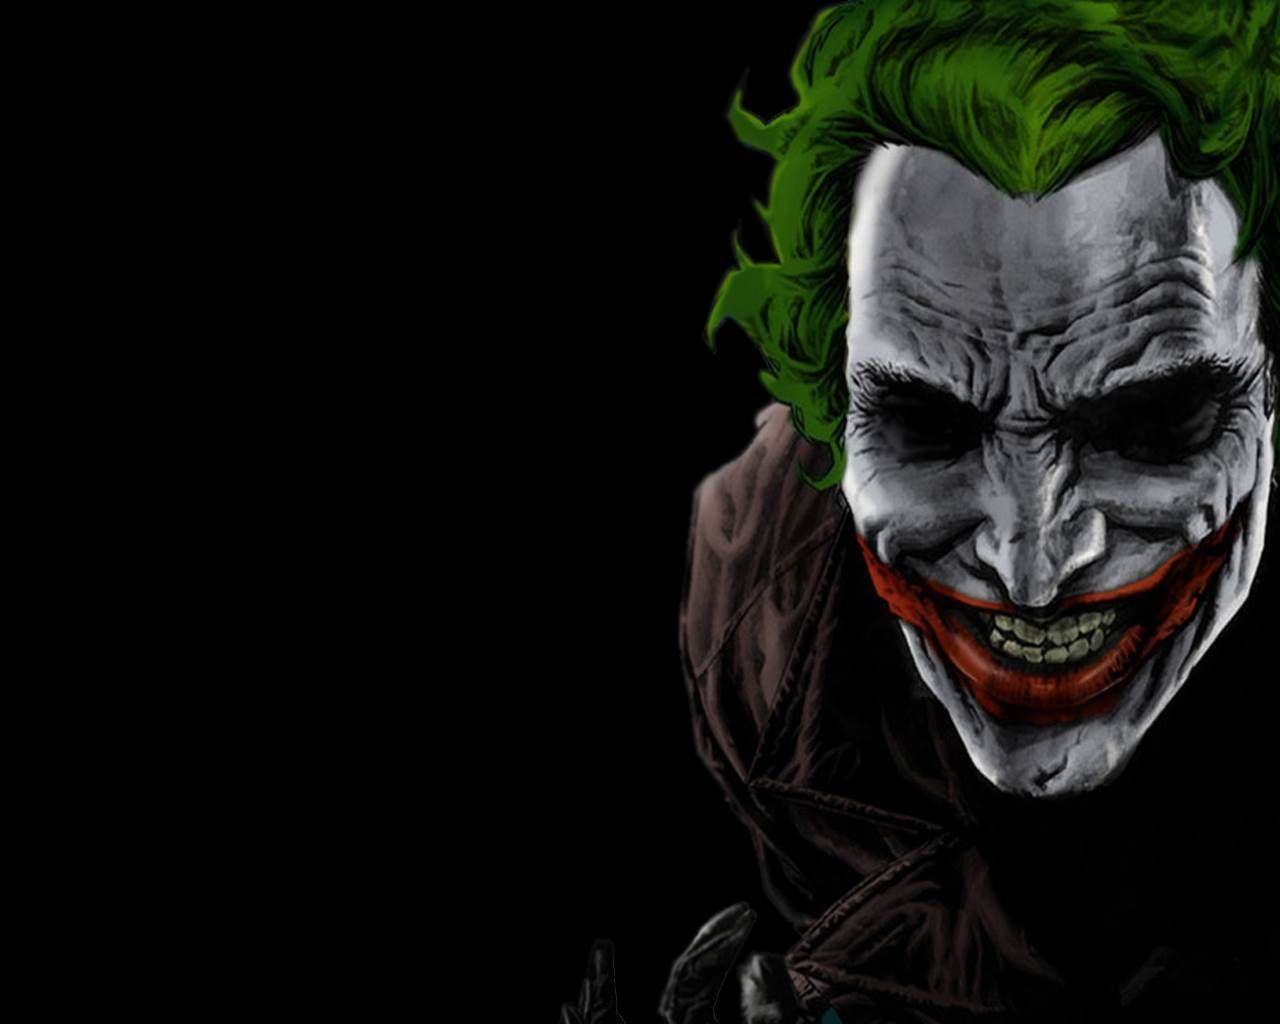 Joker Image Free Download